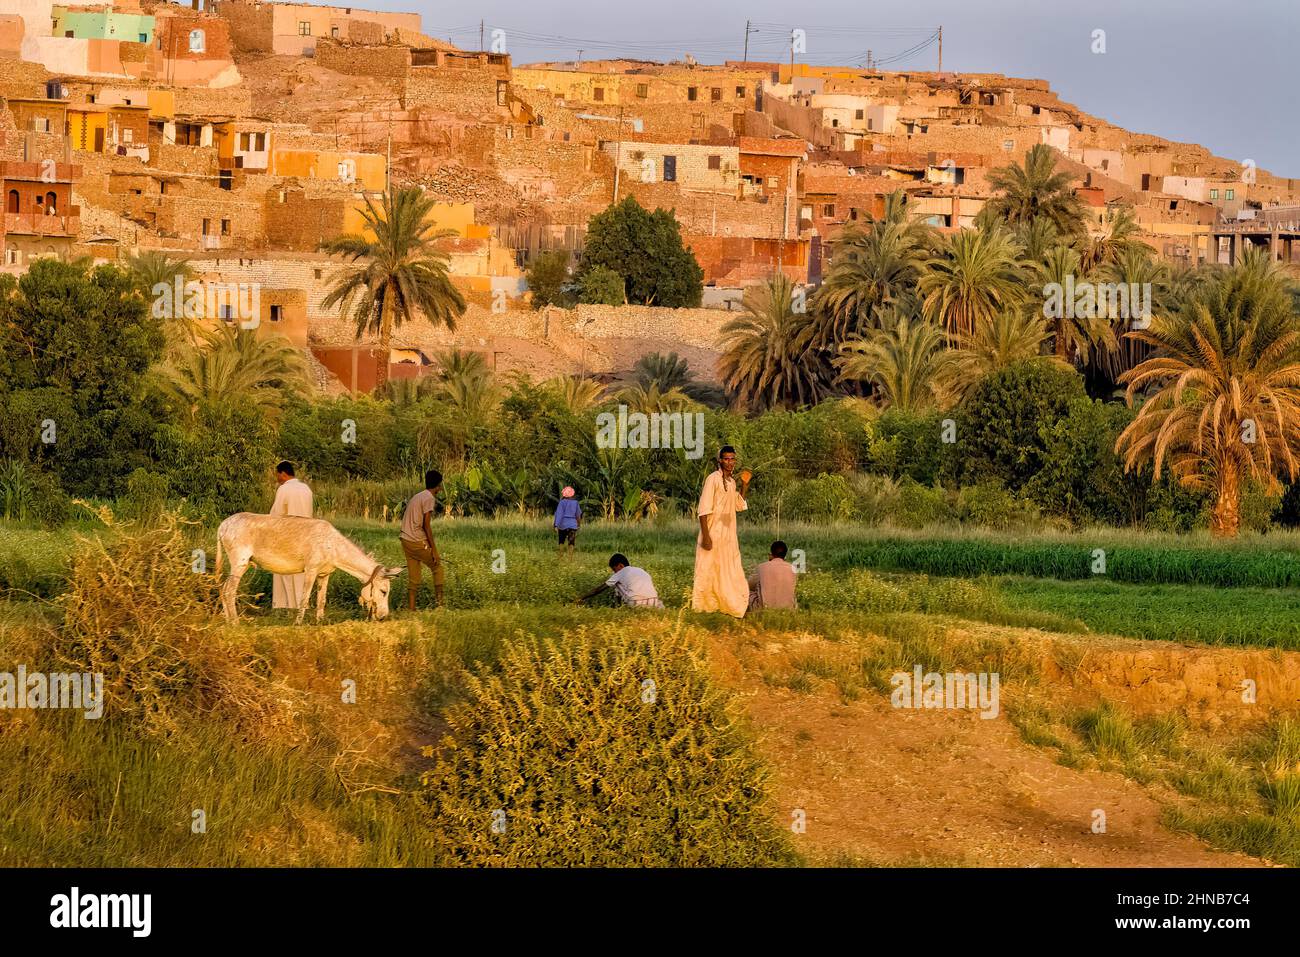 Zona agrícola cerca de la aldea Nagaa Ad Disah, situada en las colinas rocosas con vistas a la orilla del río Nilo en el Alto Egipto Foto de stock